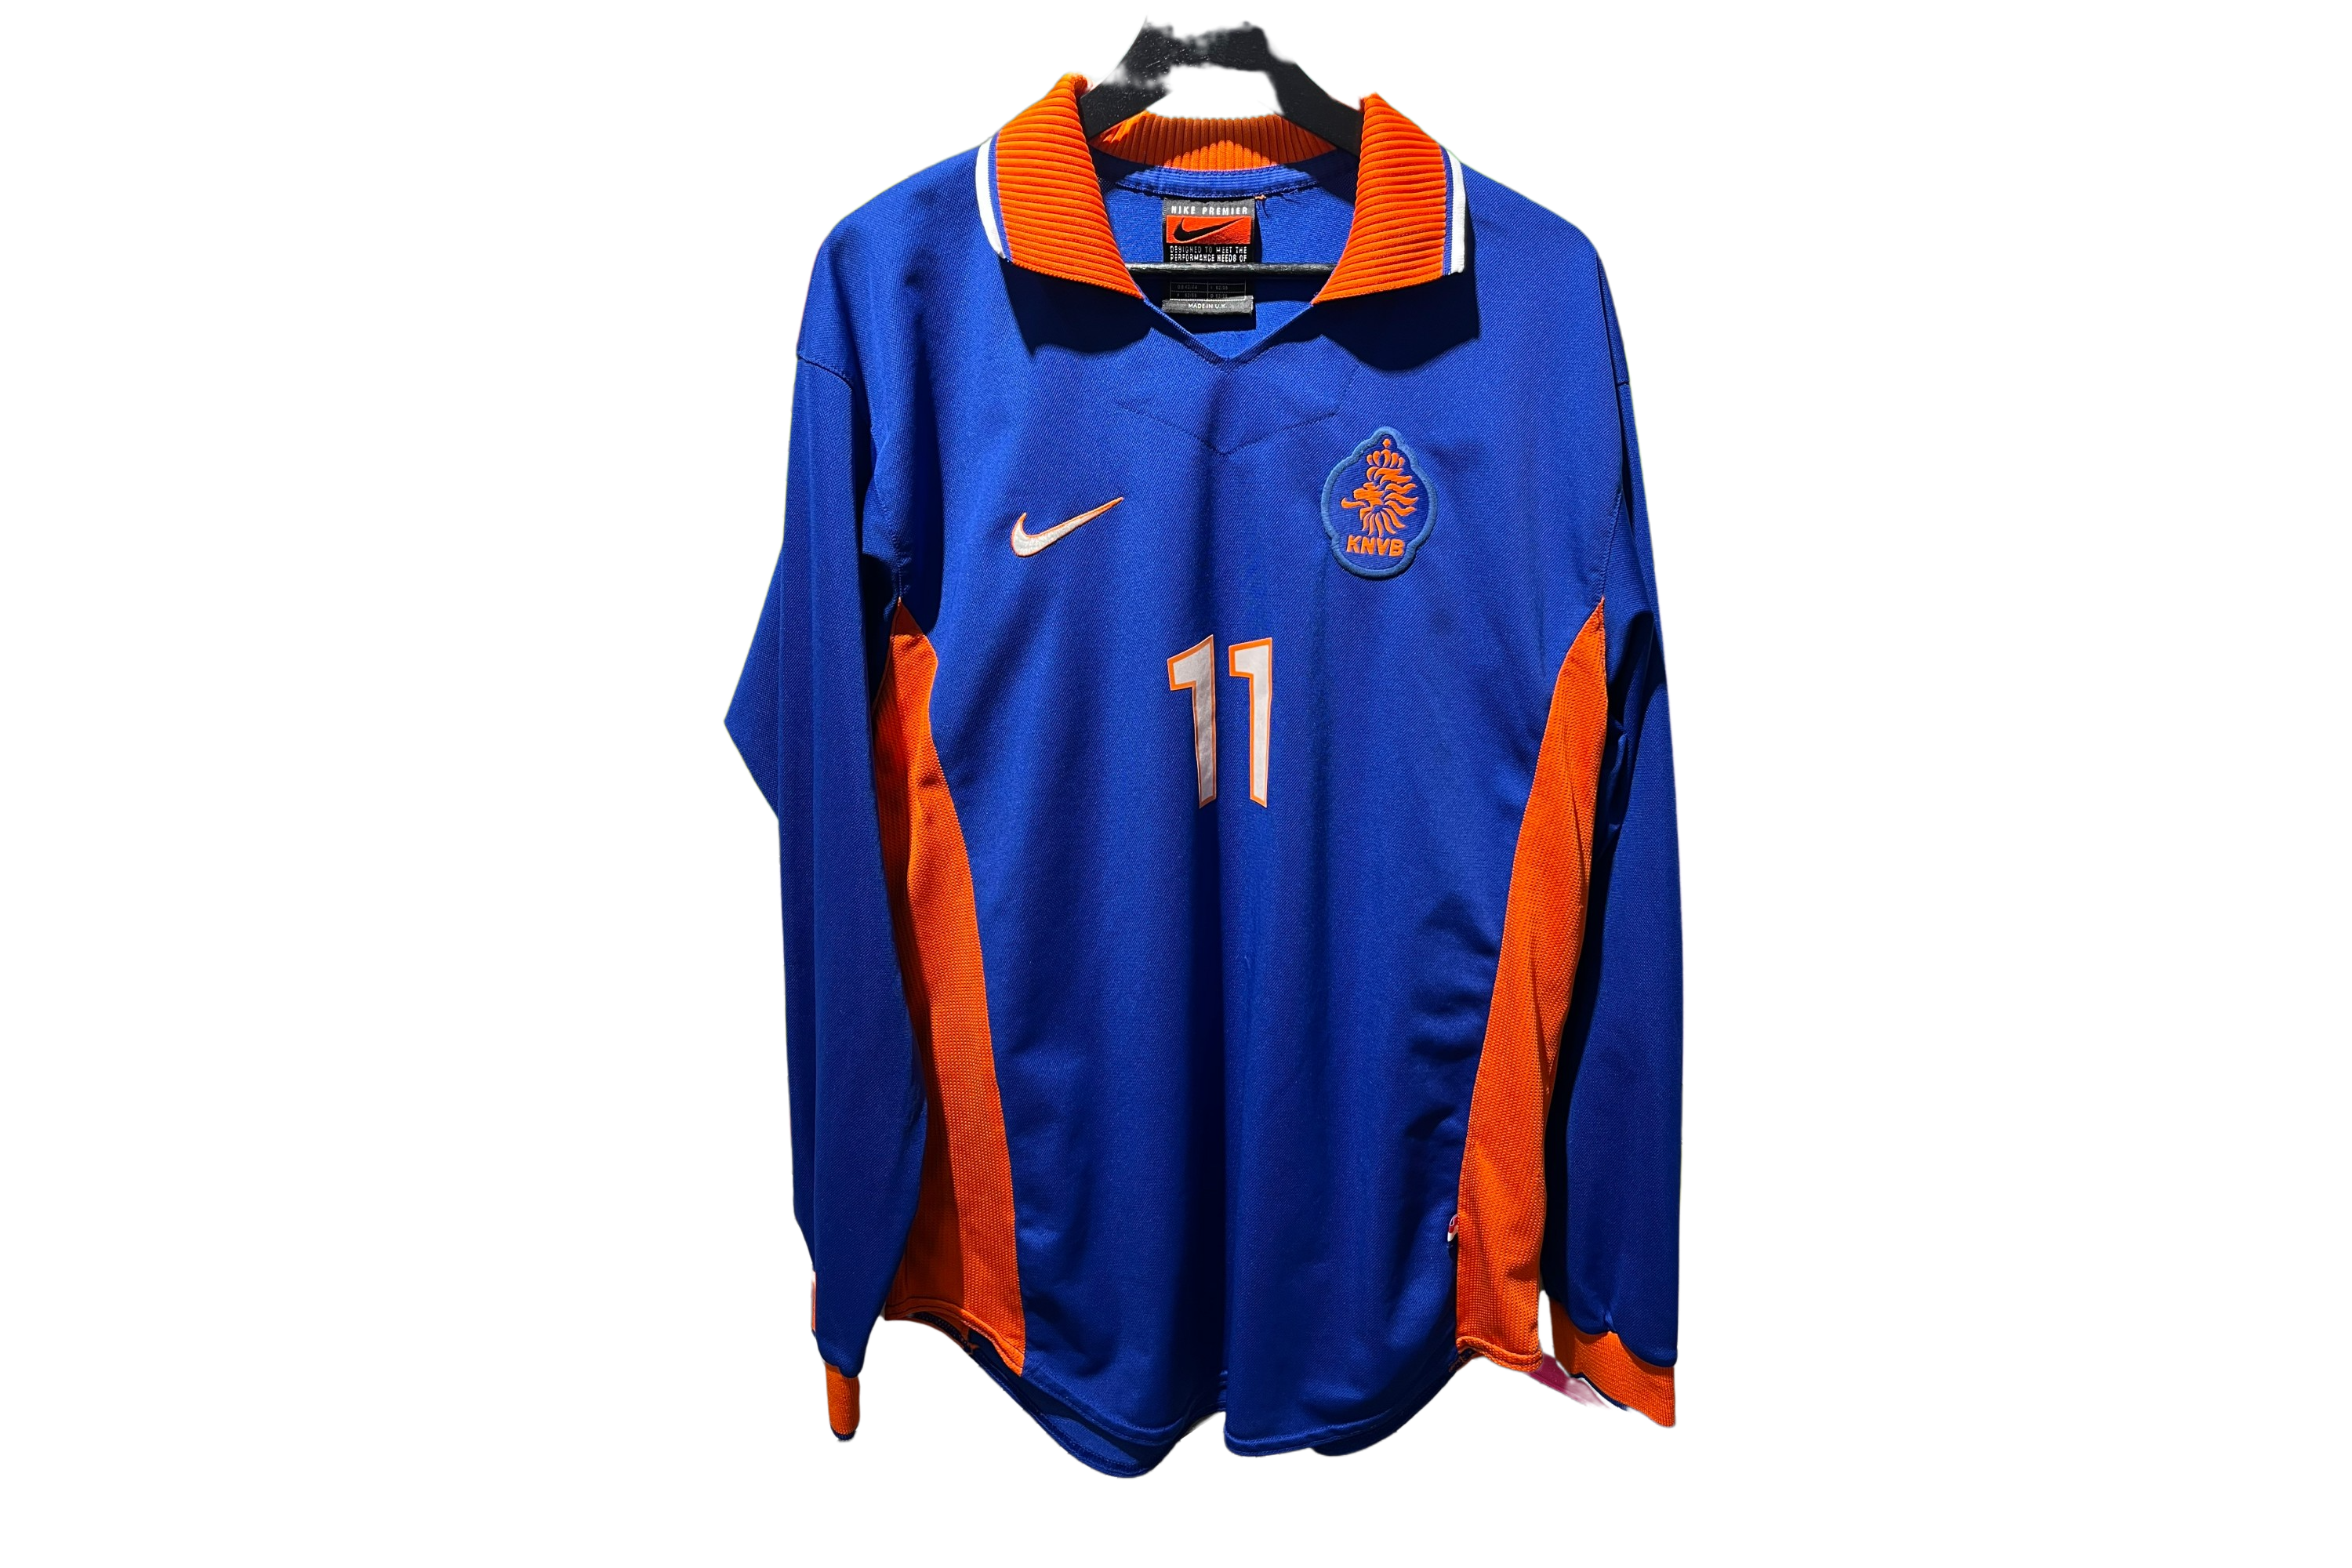 Nike - Netherlands 1997 Away Football Shirt '11'